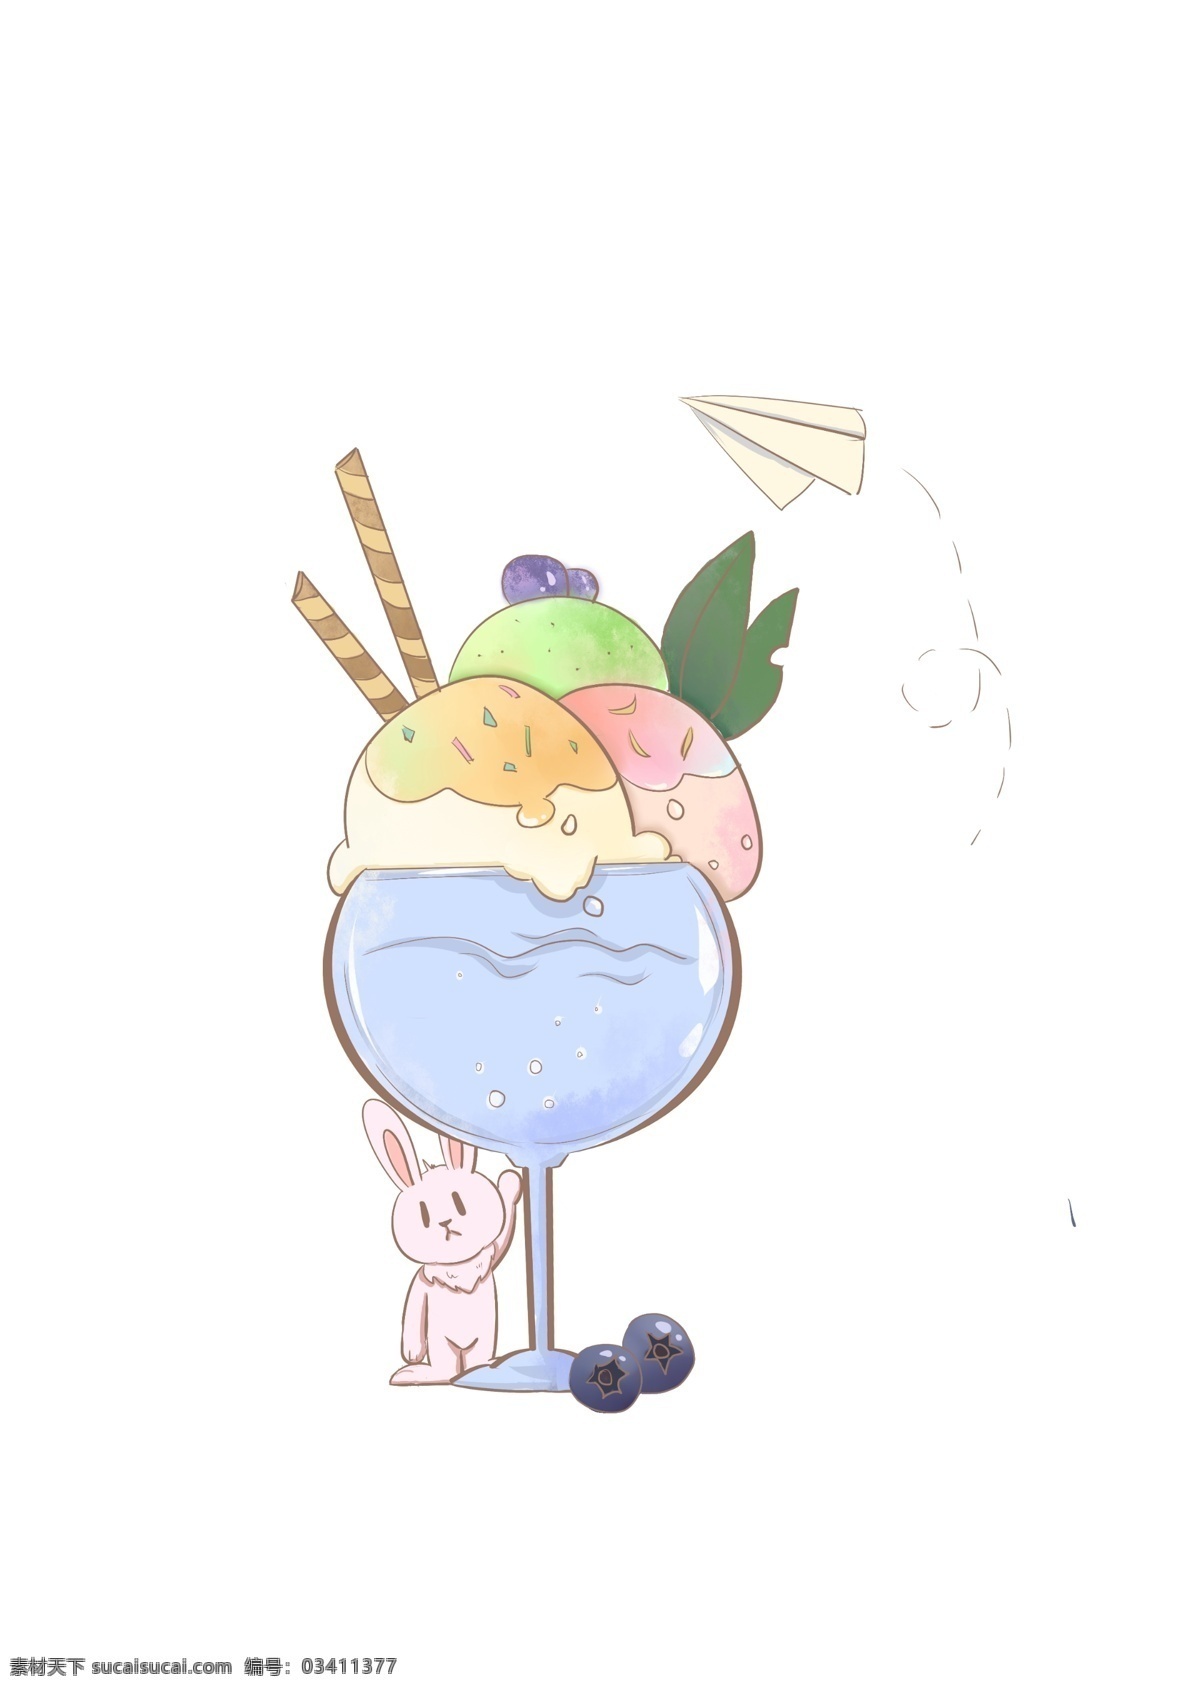 清凉 夏日 小 兔子 冰淇淋 小兔子 蓝莓 清凉夏日 夏天 童趣